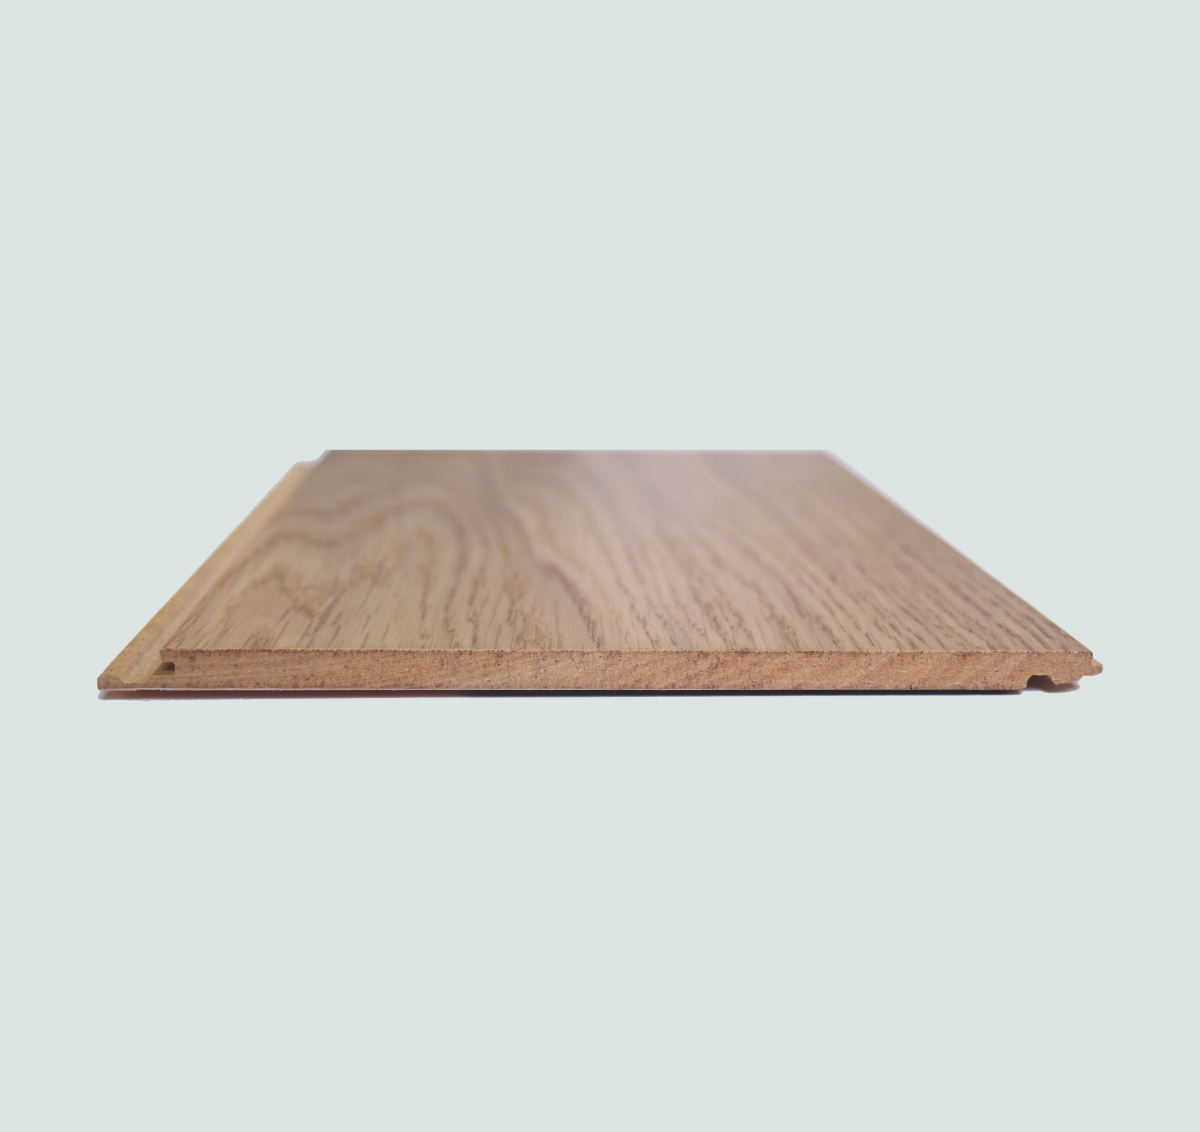 long length plank Popup hardwood veneer stuga flooring